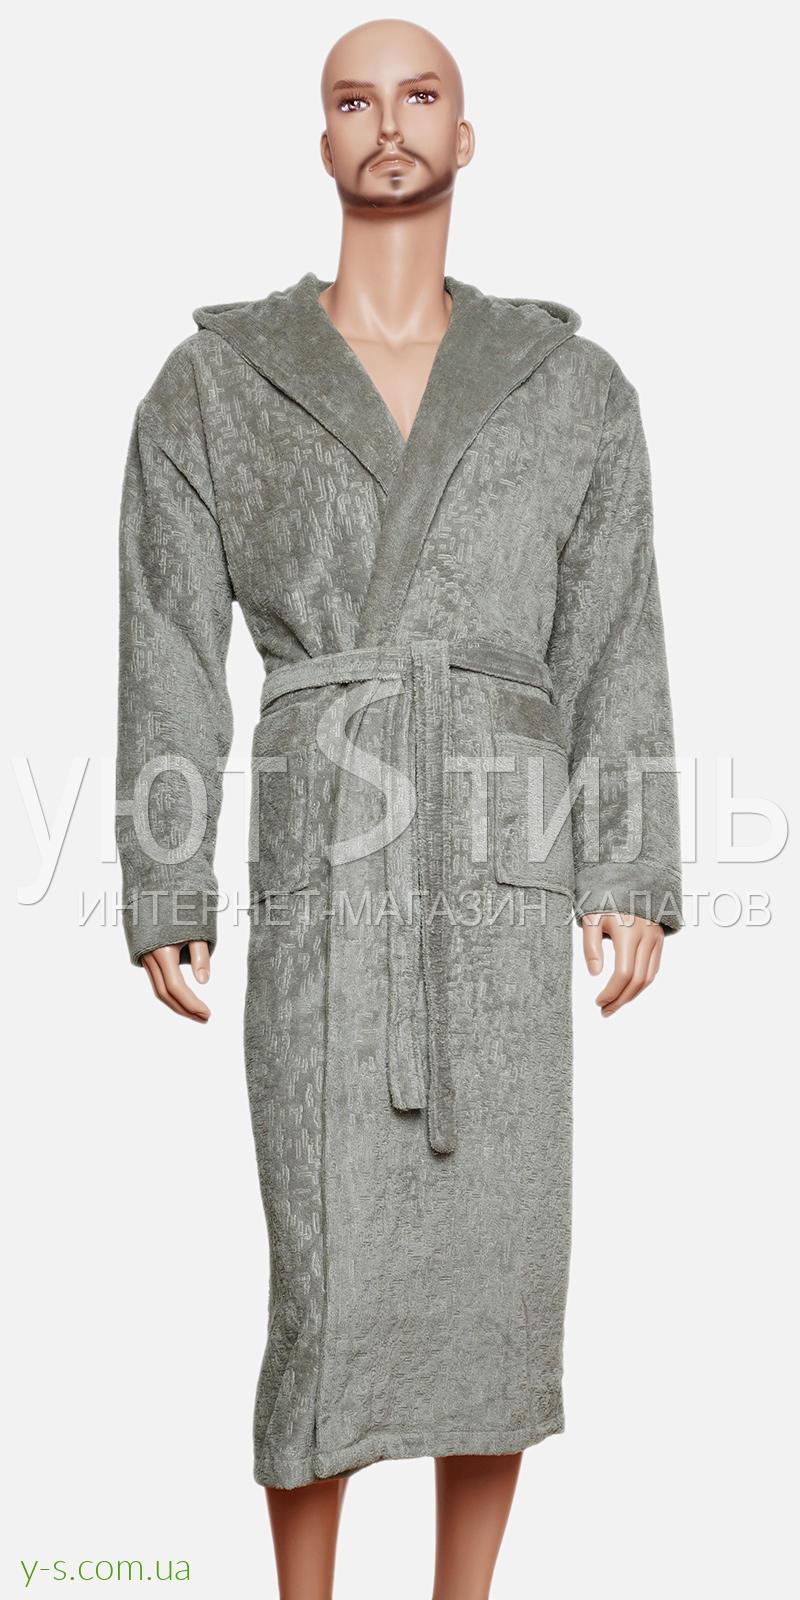 Оливковий бамбуковий халат для чоловіка BE9021